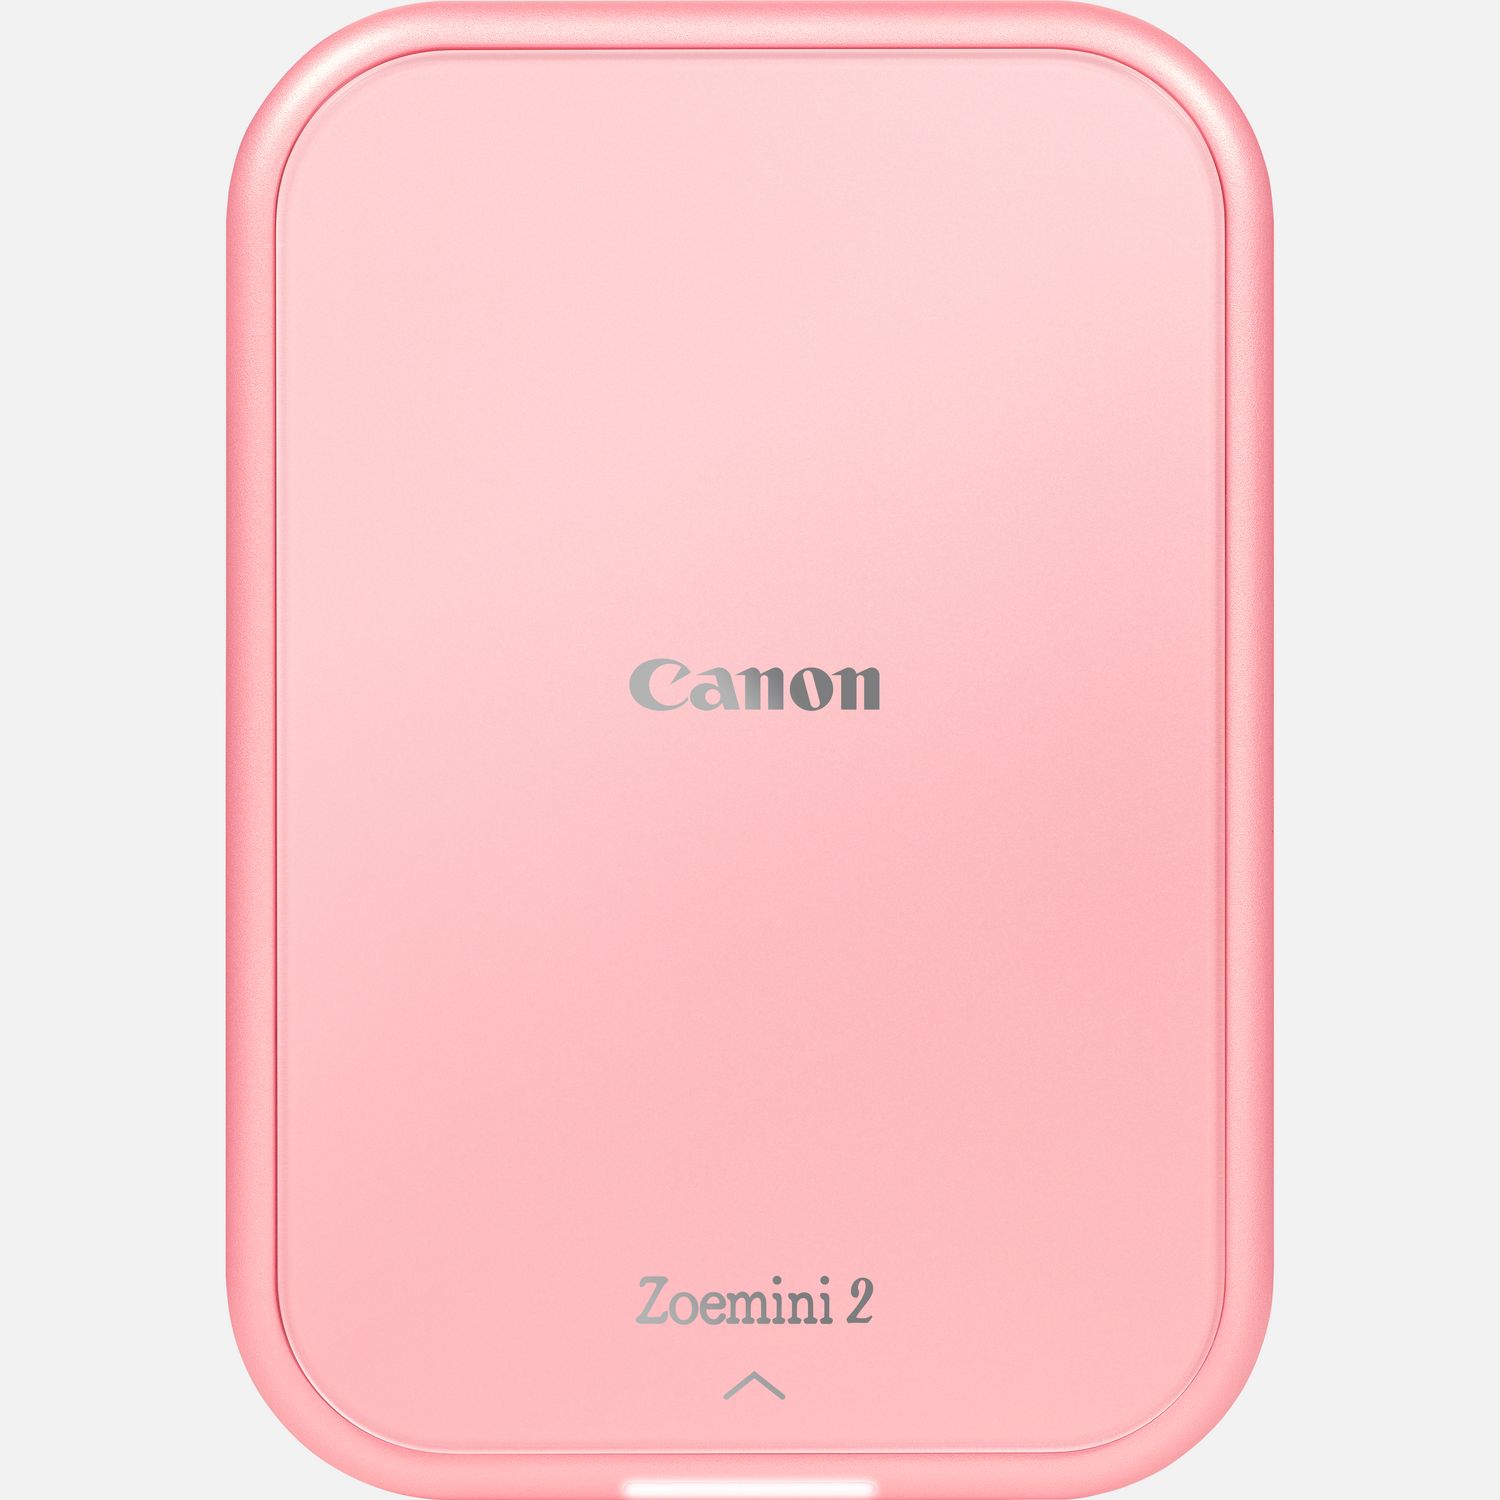 Image of Stampante fotografica portatile a colori Canon Zoemini 2, rosa gold